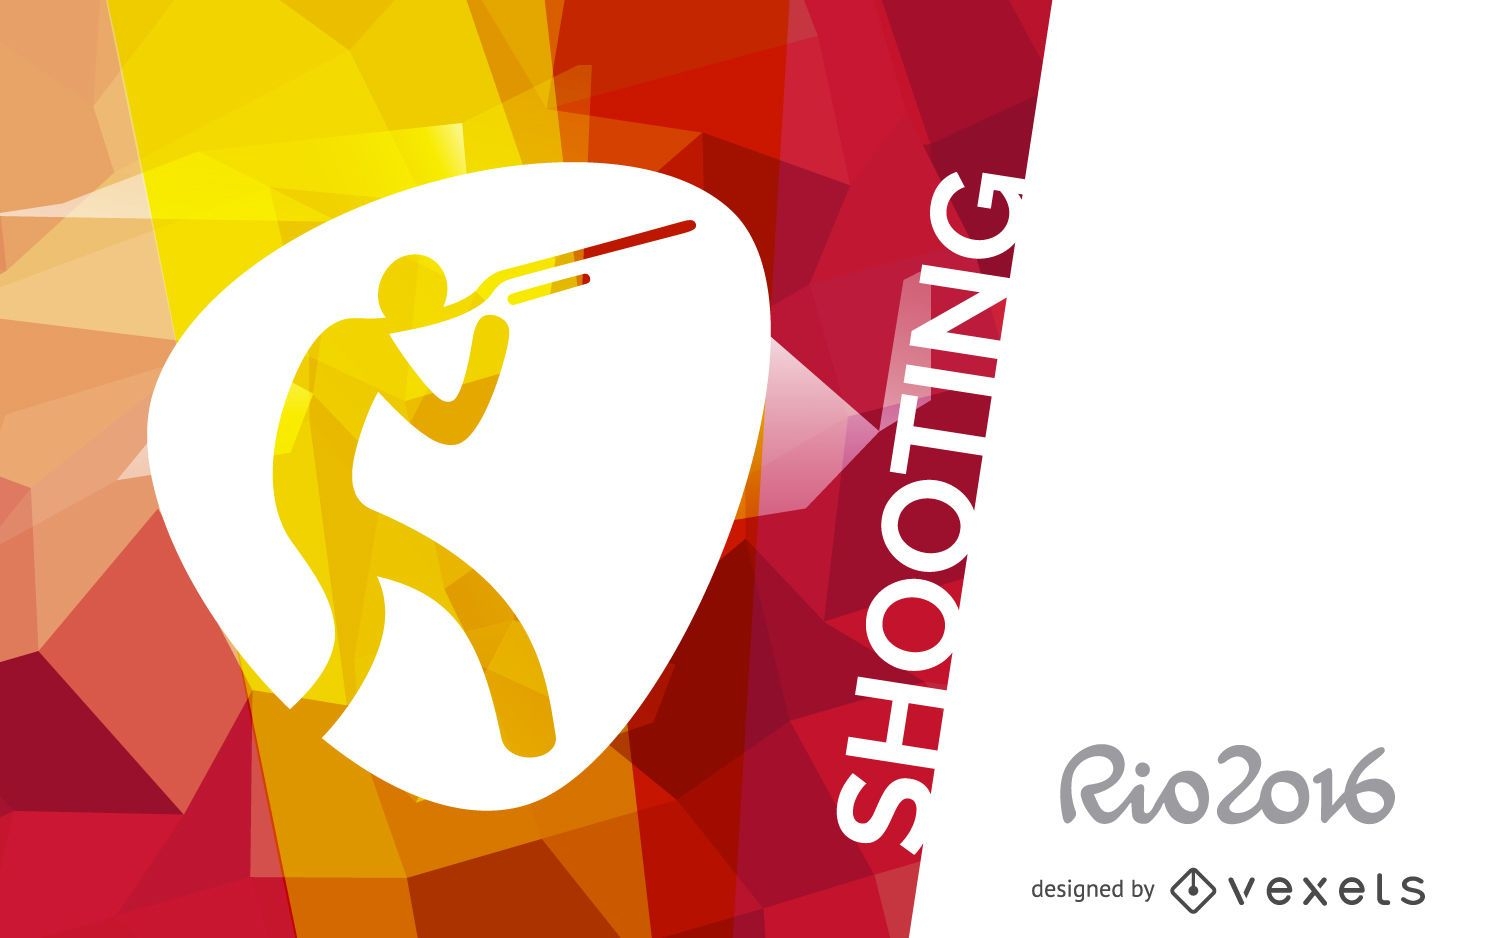 Rio 2016 shooting design